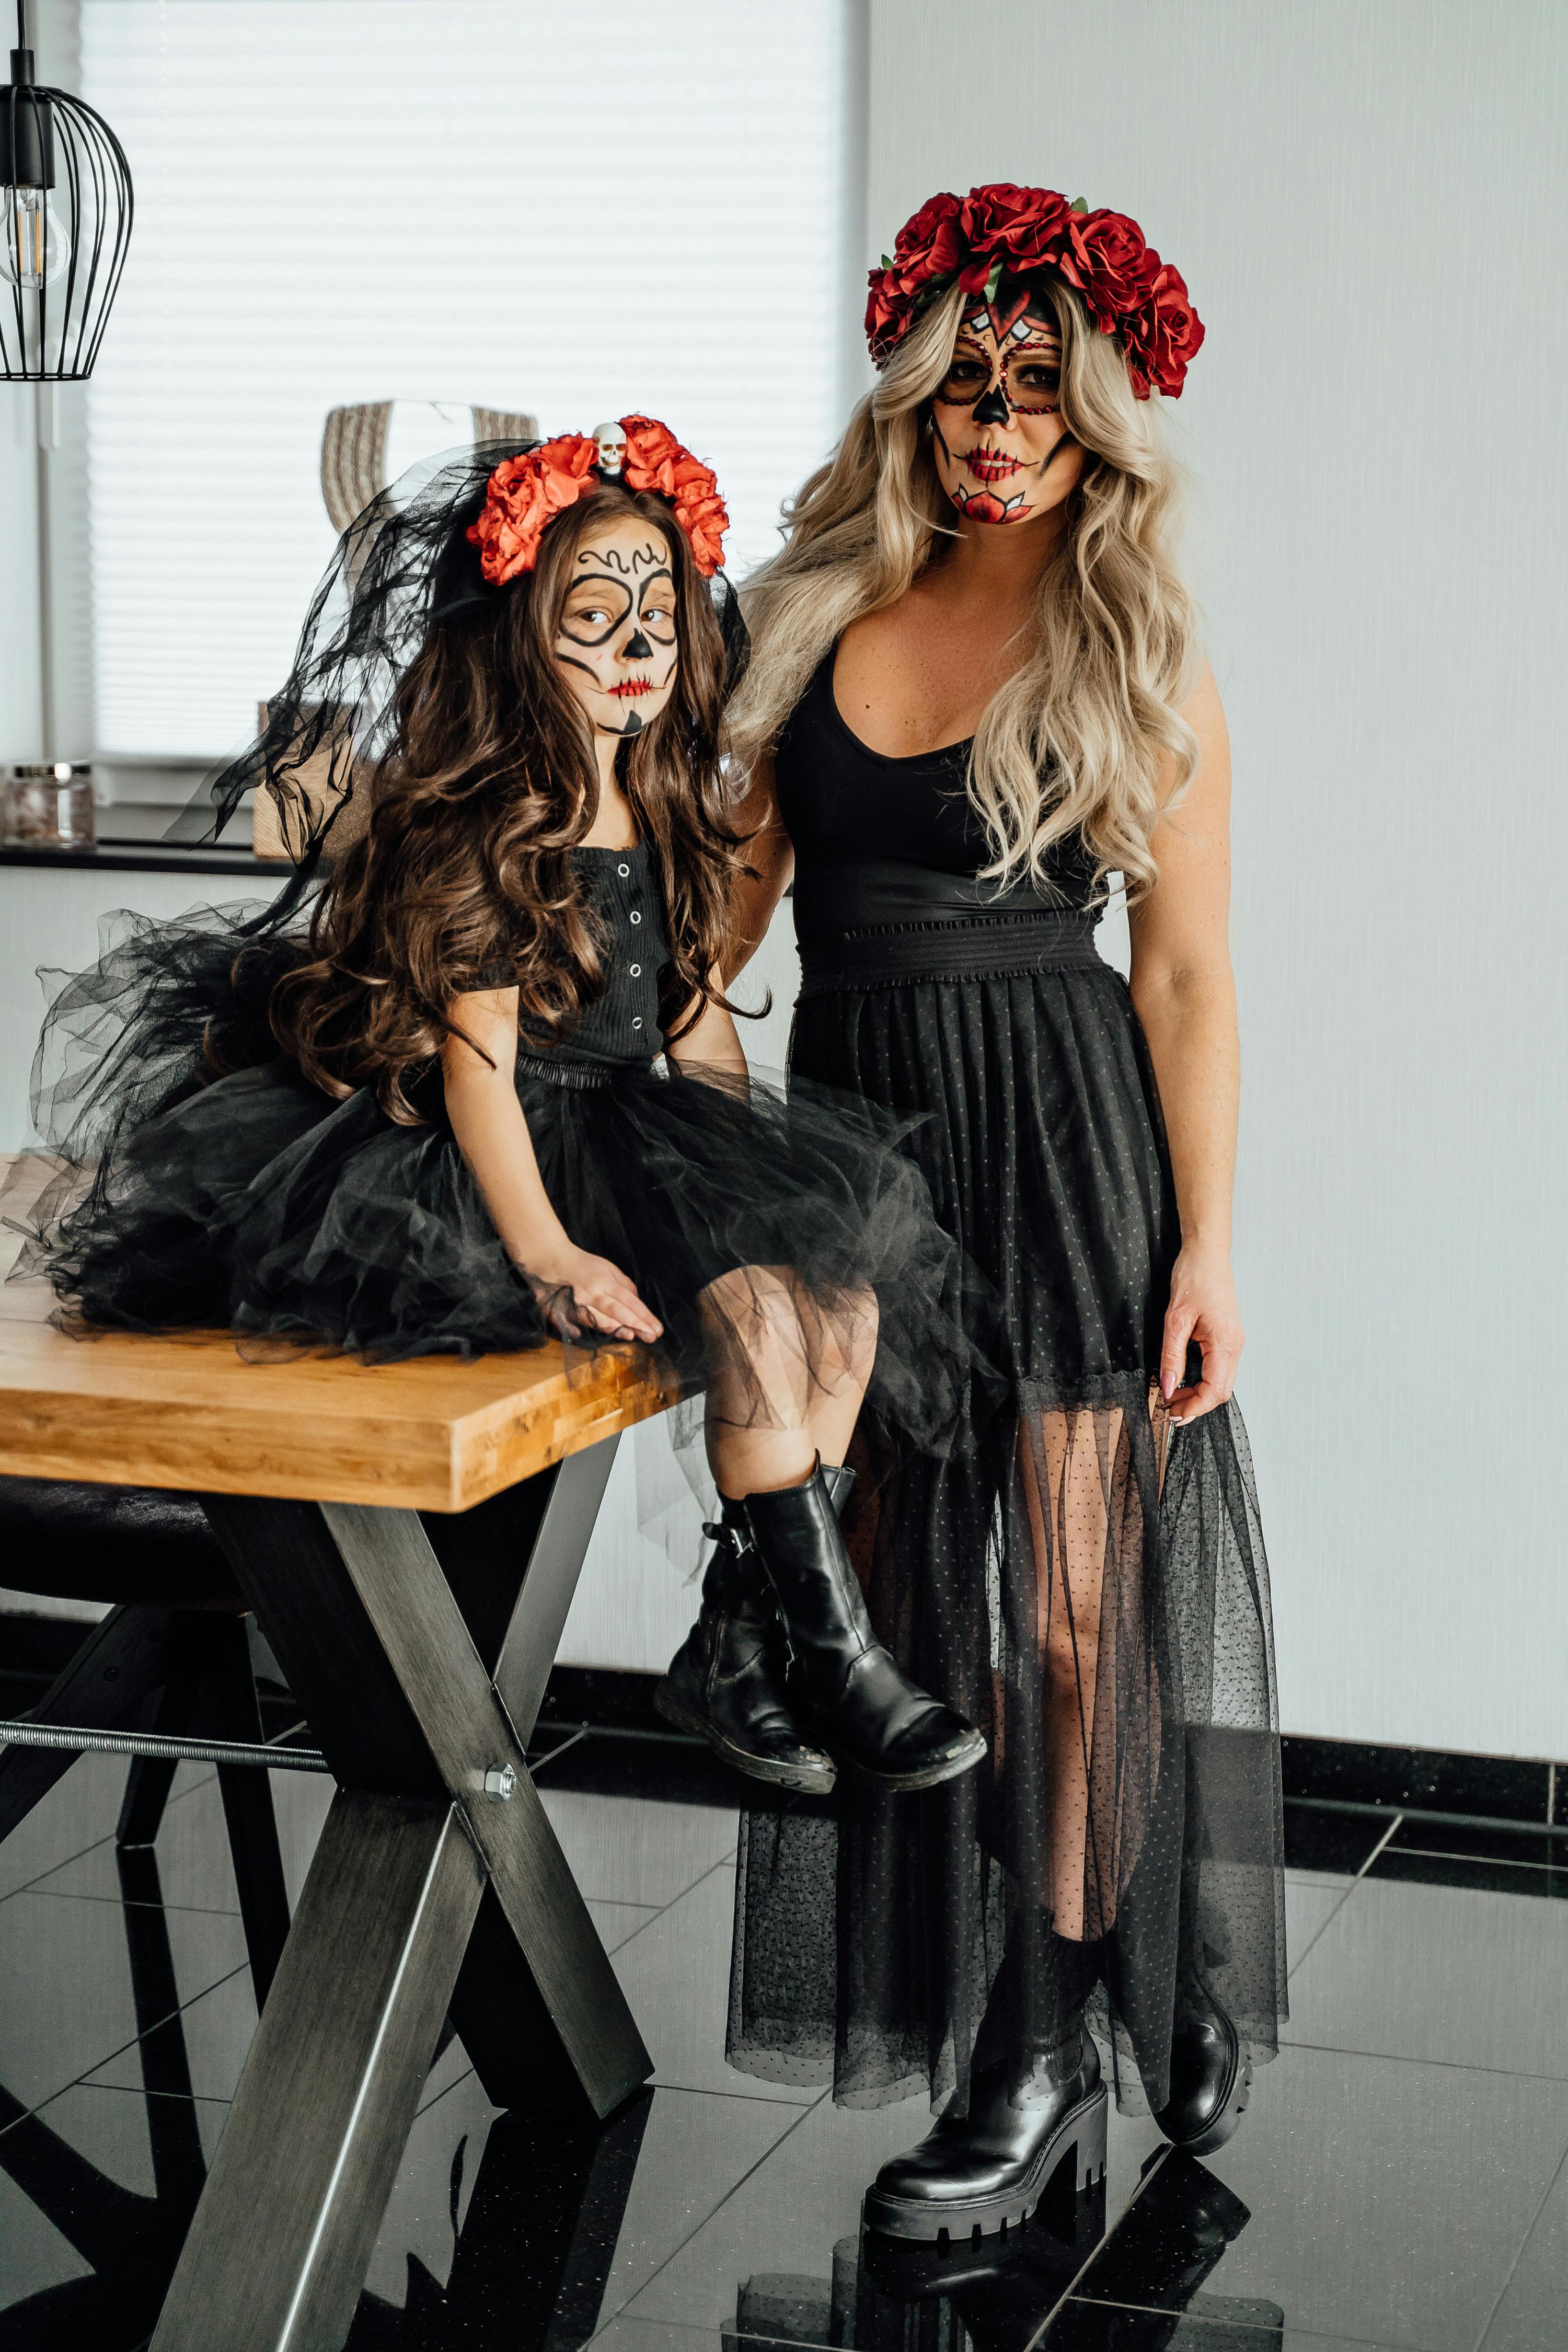 鍔 callejón sombrero Woman with Blonde Hair and a Girl Sitting on a Table Wearing Halloween  Costumes · Free Stock Photo